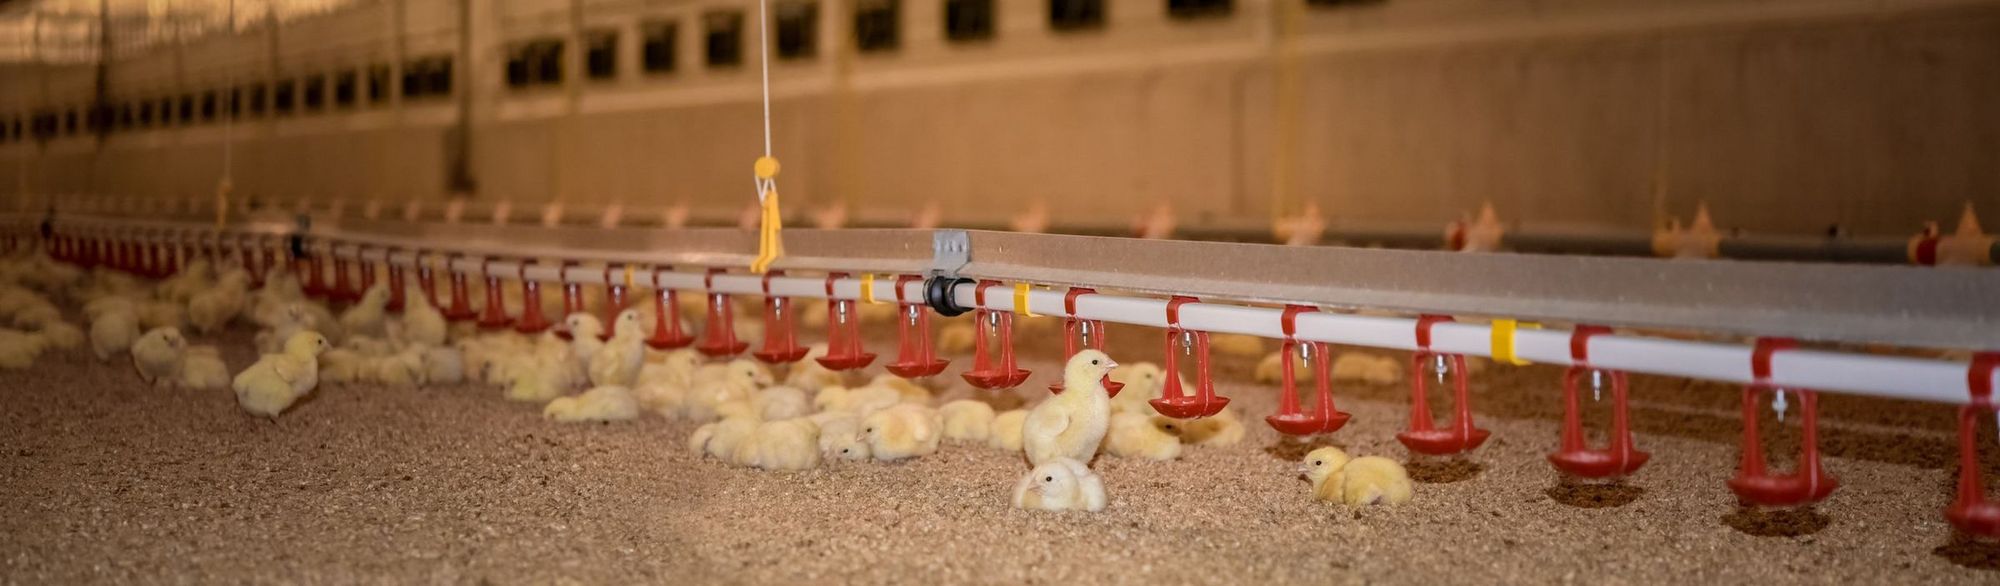 Hühnerküken auf dem Boden mit Einstreu in einem Stall mit Futterspendern